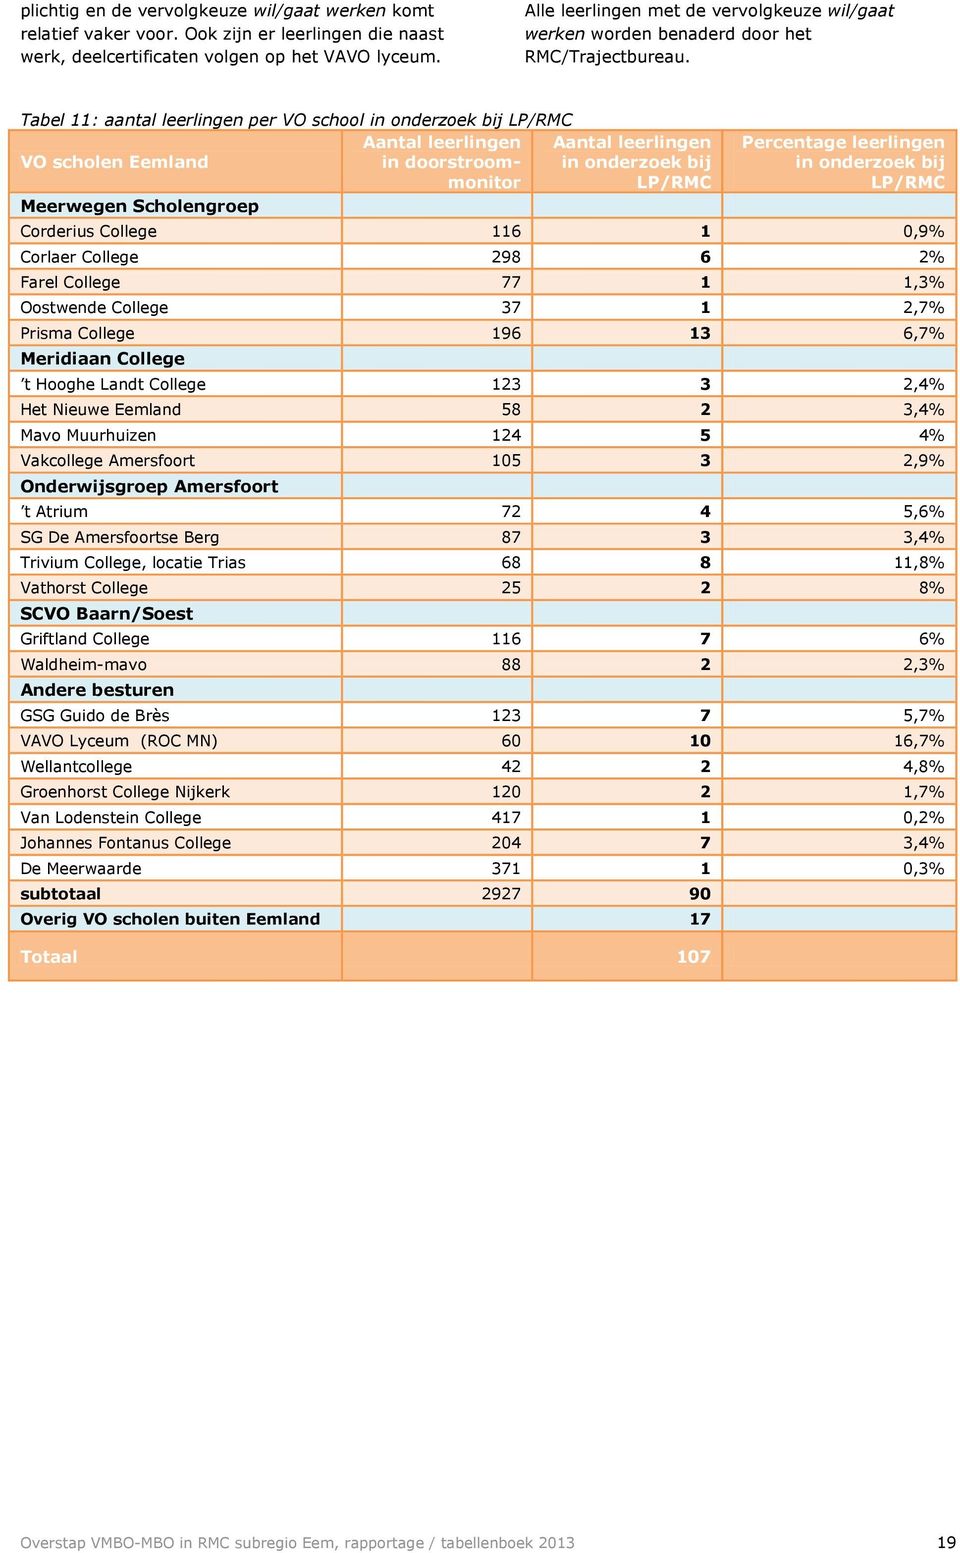 Tabel 11: aantal leerlingen per VO school in onderzoek bij LP/RMC VO scholen Eemland leerlingen in doorstroommonitor leerlingen in onderzoek bij LP/RMC Meerwegen Scholengroep Percentage leerlingen in